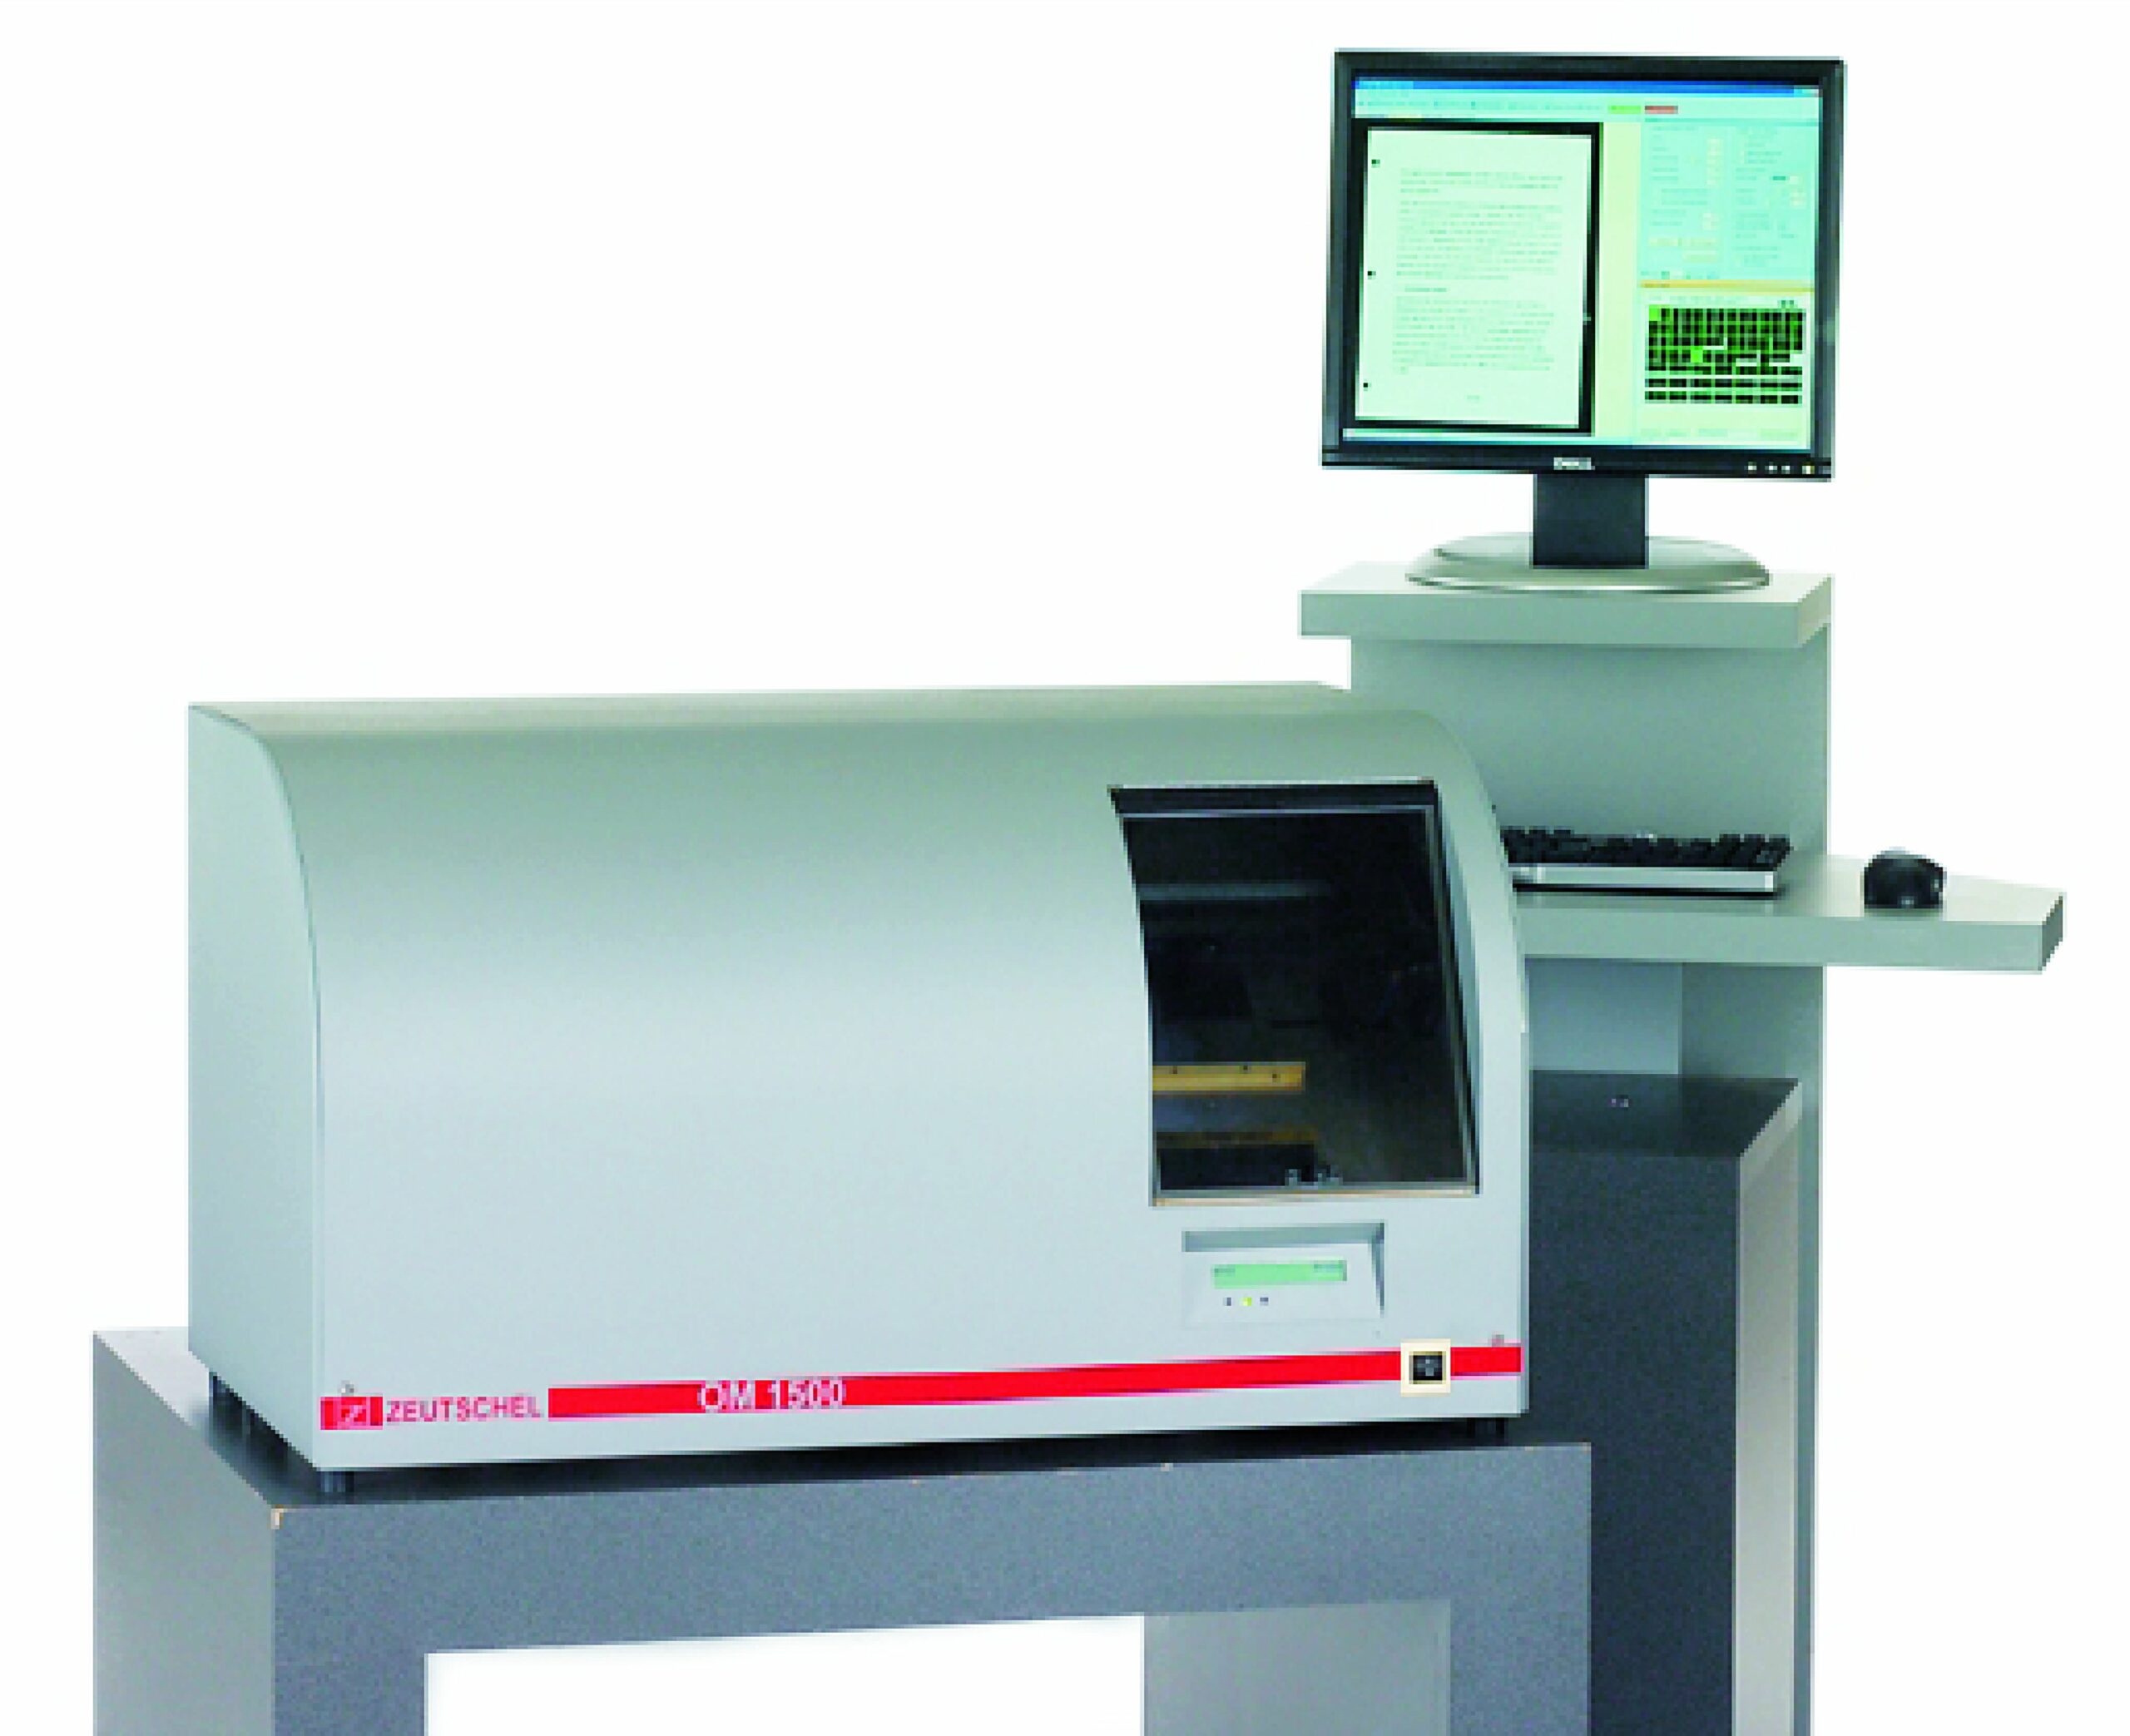 Microfiche scanner OM 1500